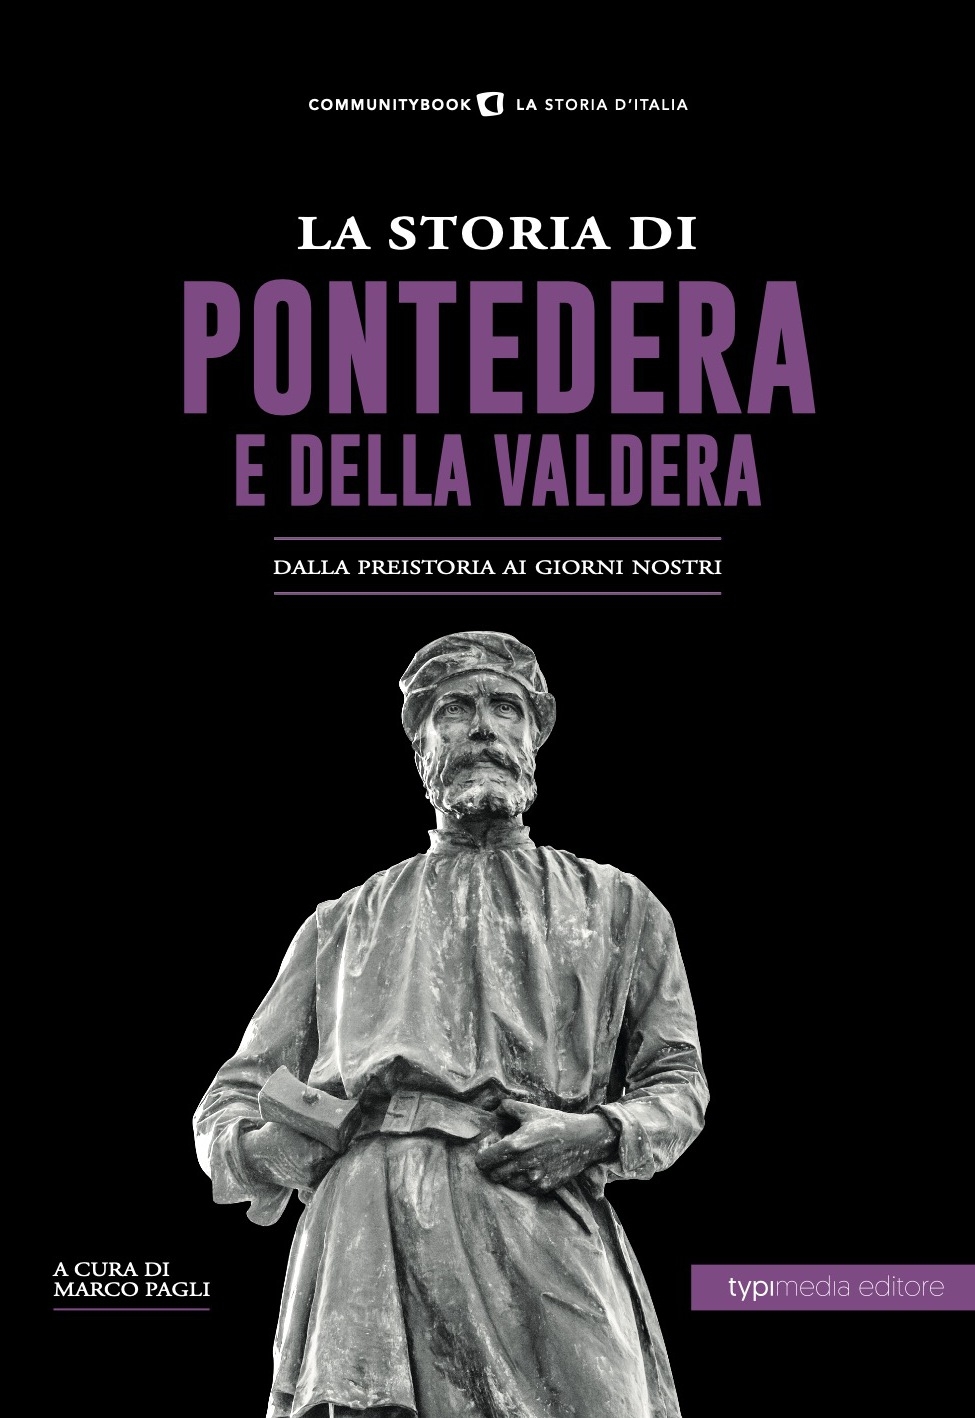 La storia di Pontedera e Valdera, dalla preistoria ai giorni nostri